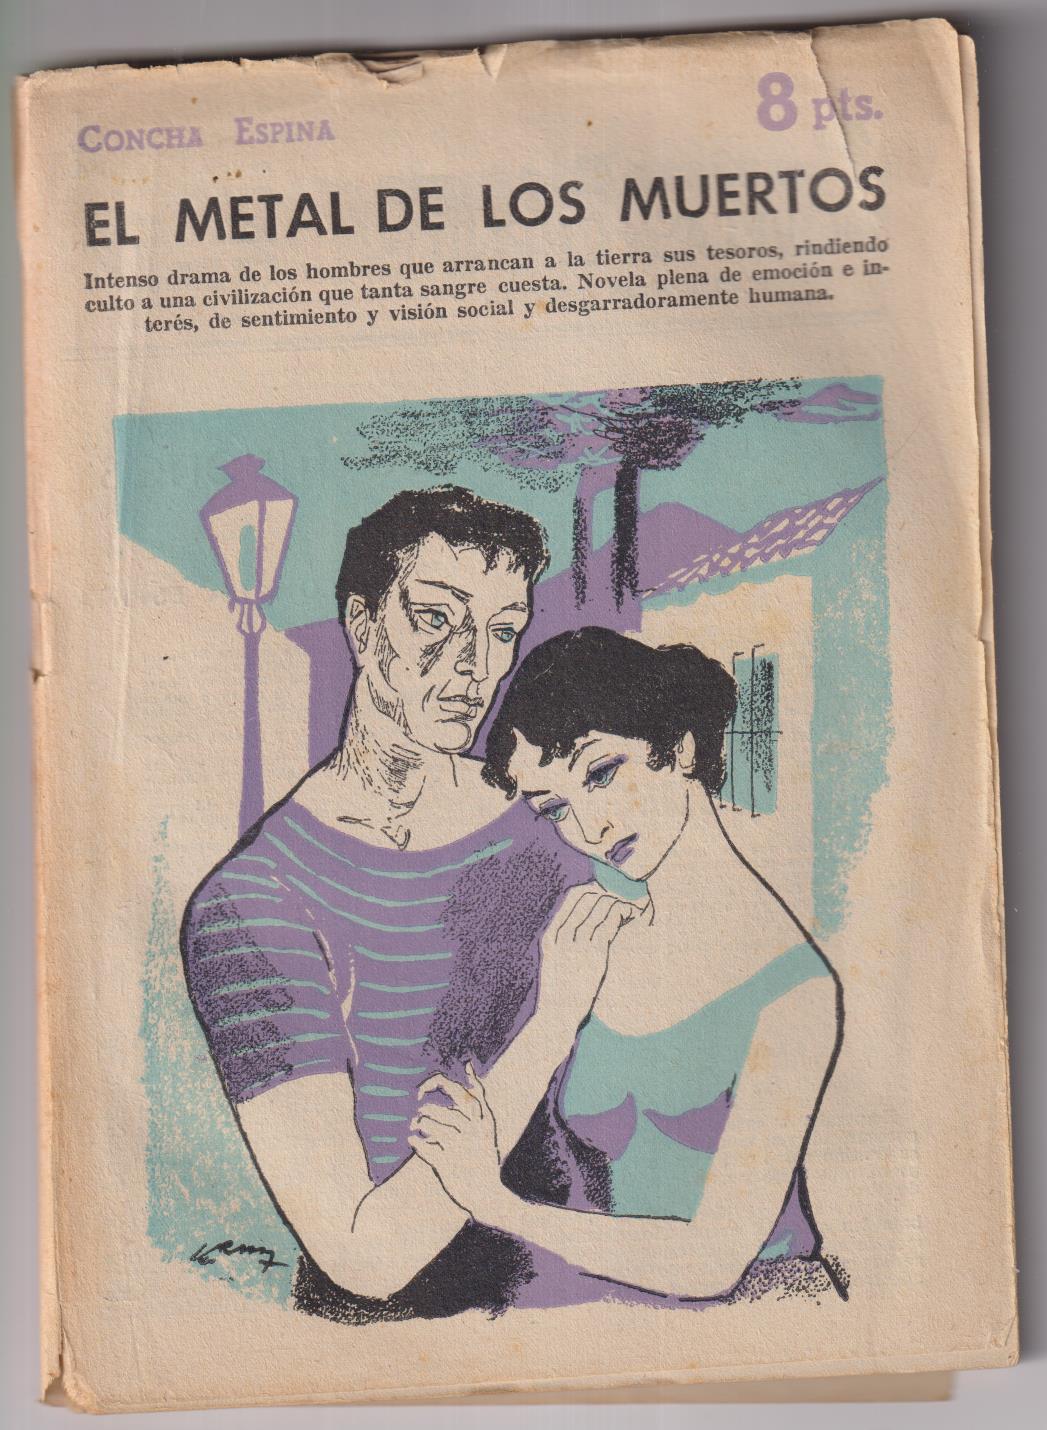 Revista Literaria Novelas y Cuentos nº 1408. Concha Espina. El Metal de los muertos, 1958